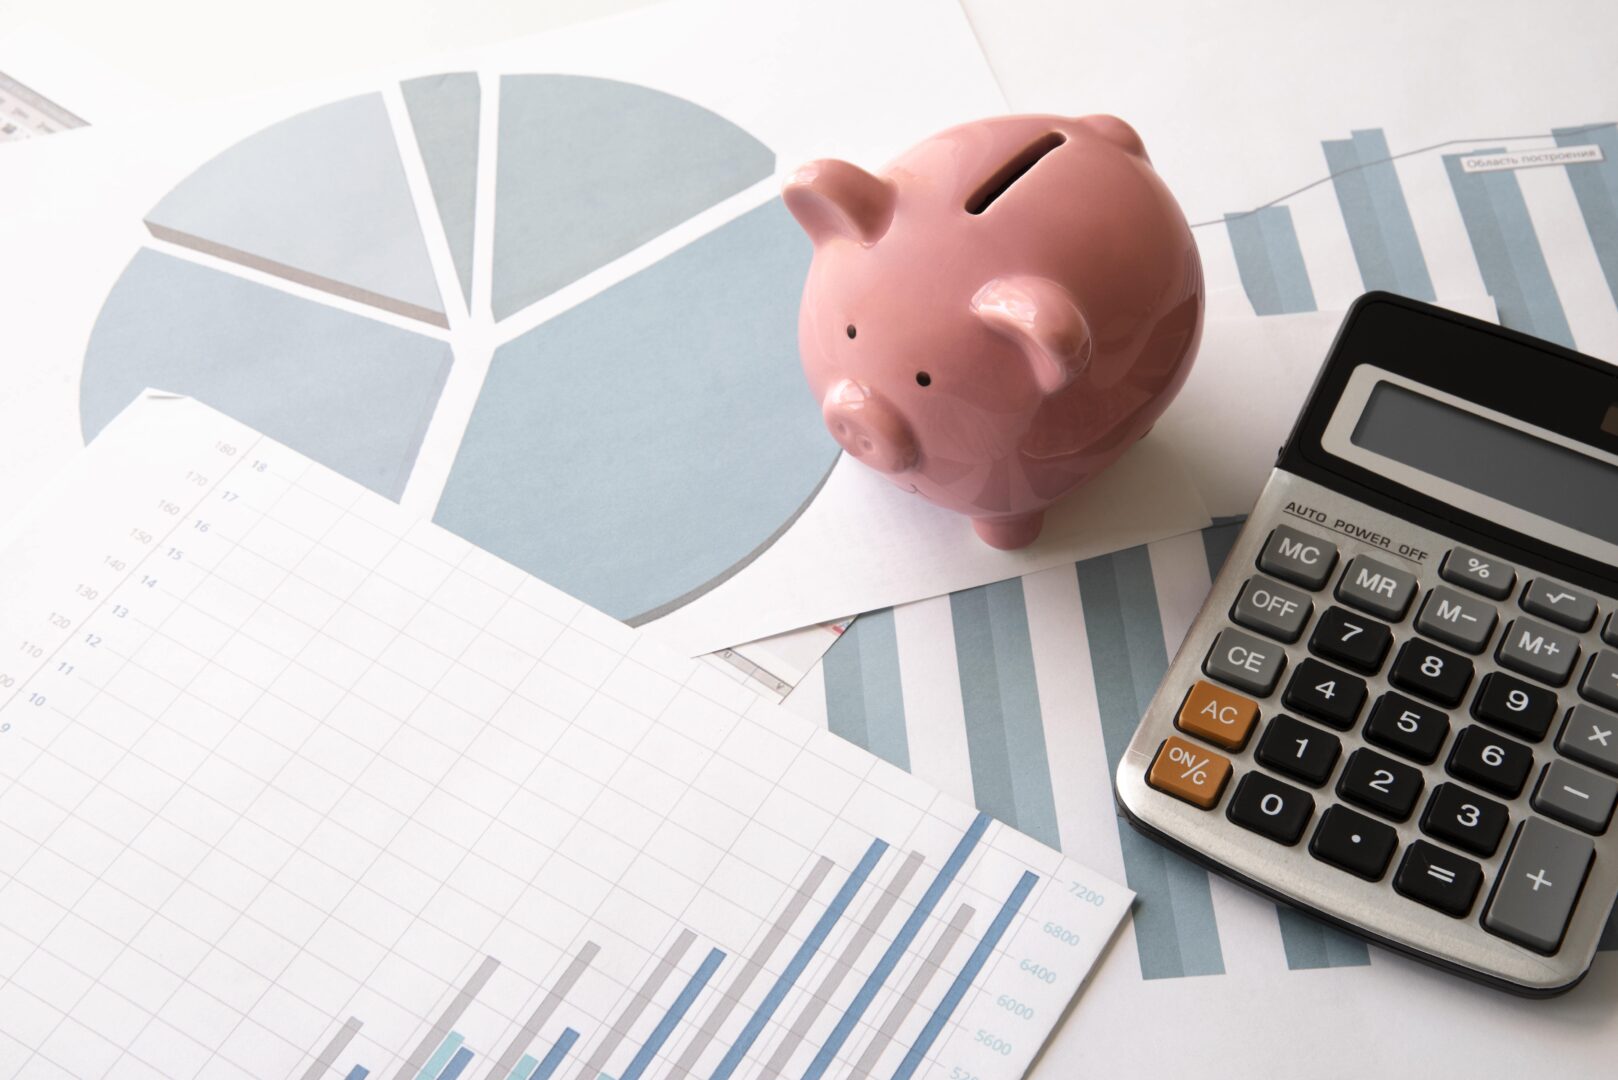 calculadora e guias de impostos representando o planejamento tributario